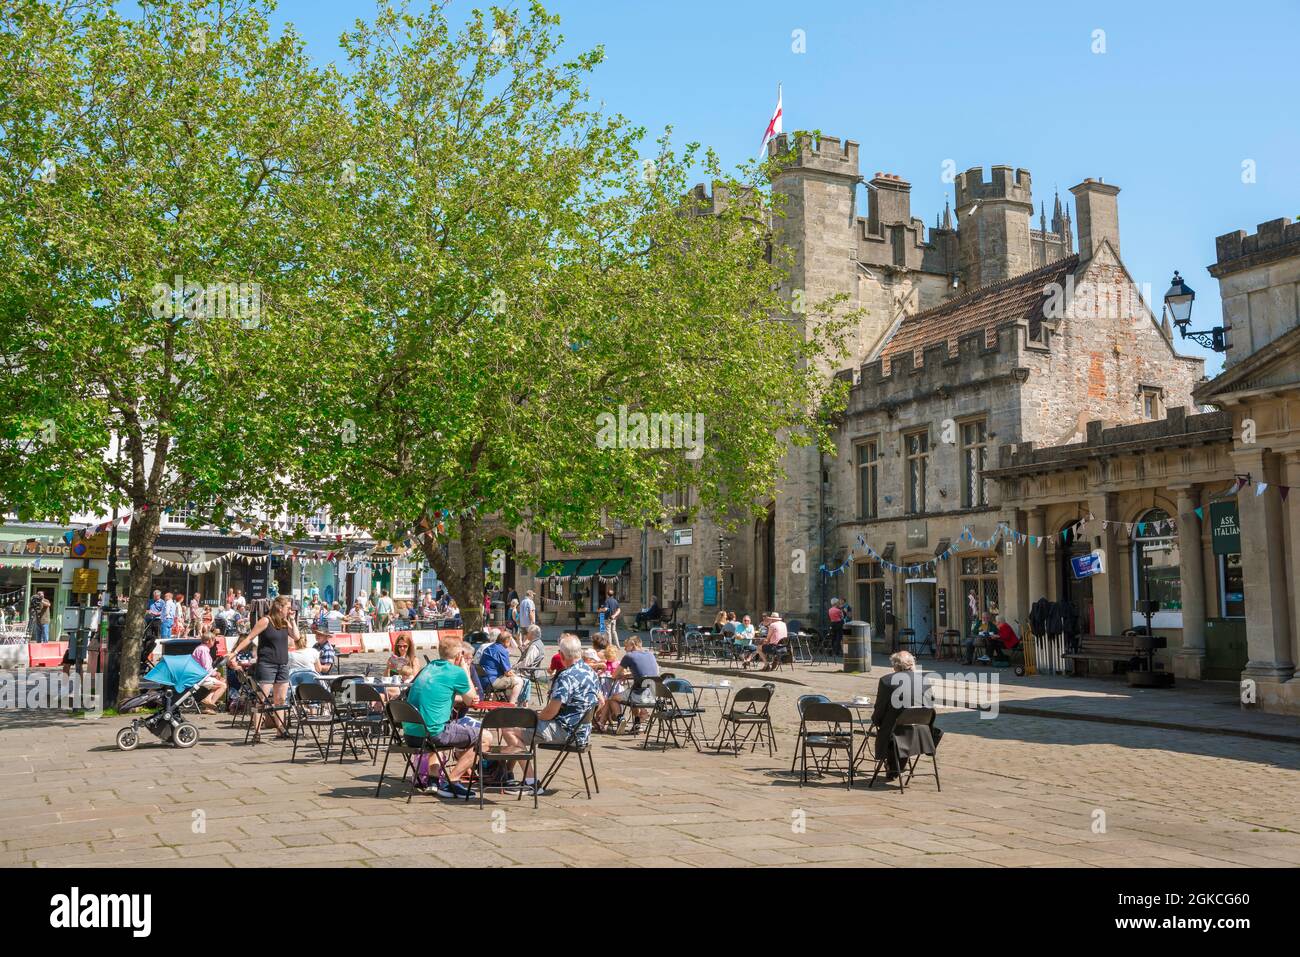 Puits Royaume-Uni, vue en été de personnes assis à des tables de café dans l'historique place du marché dans le centre de Wells, Somerset, Angleterre, Royaume-Uni Banque D'Images